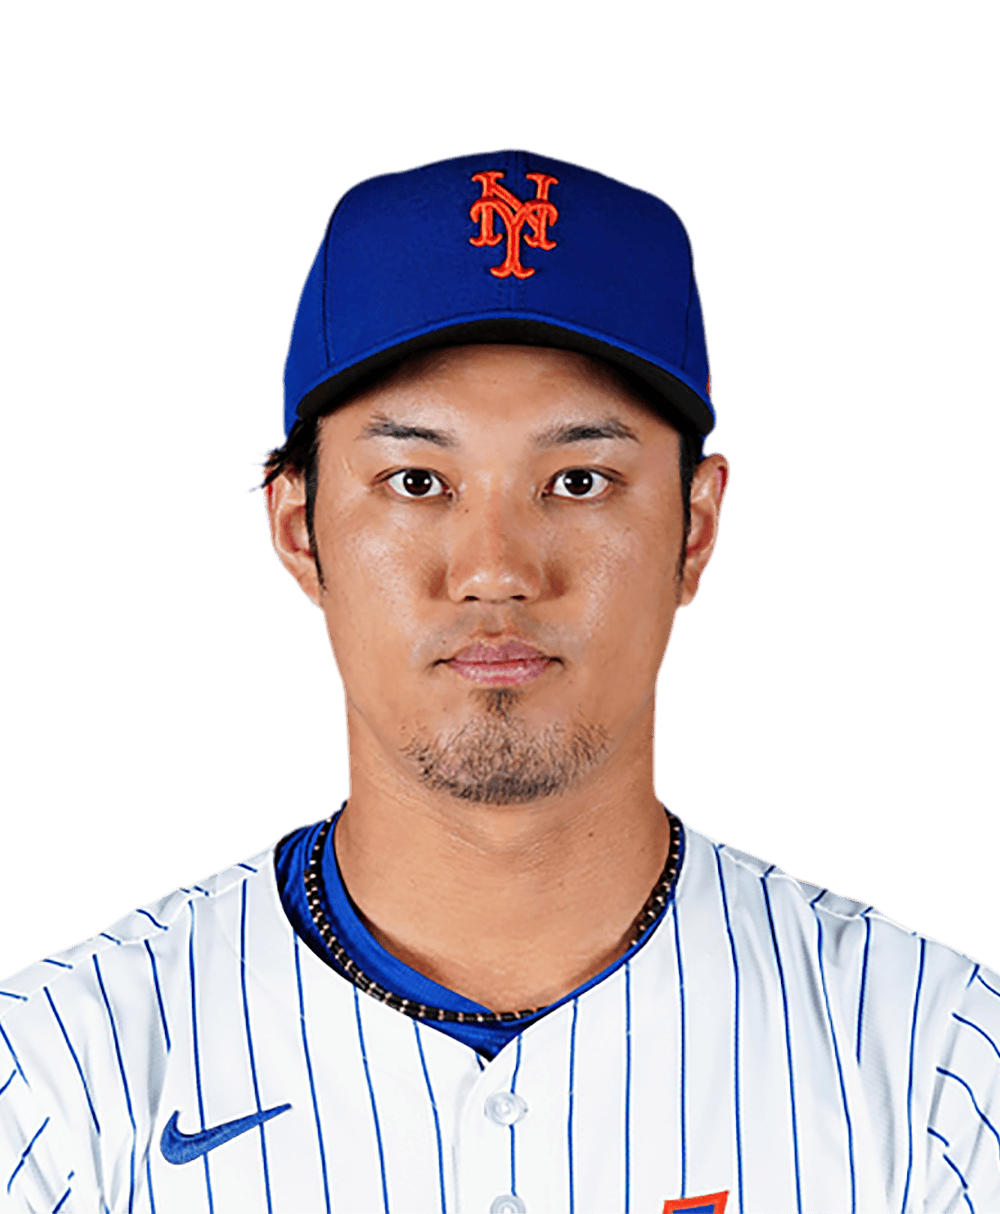 Shintaro Fujinami Bio Information - MLB